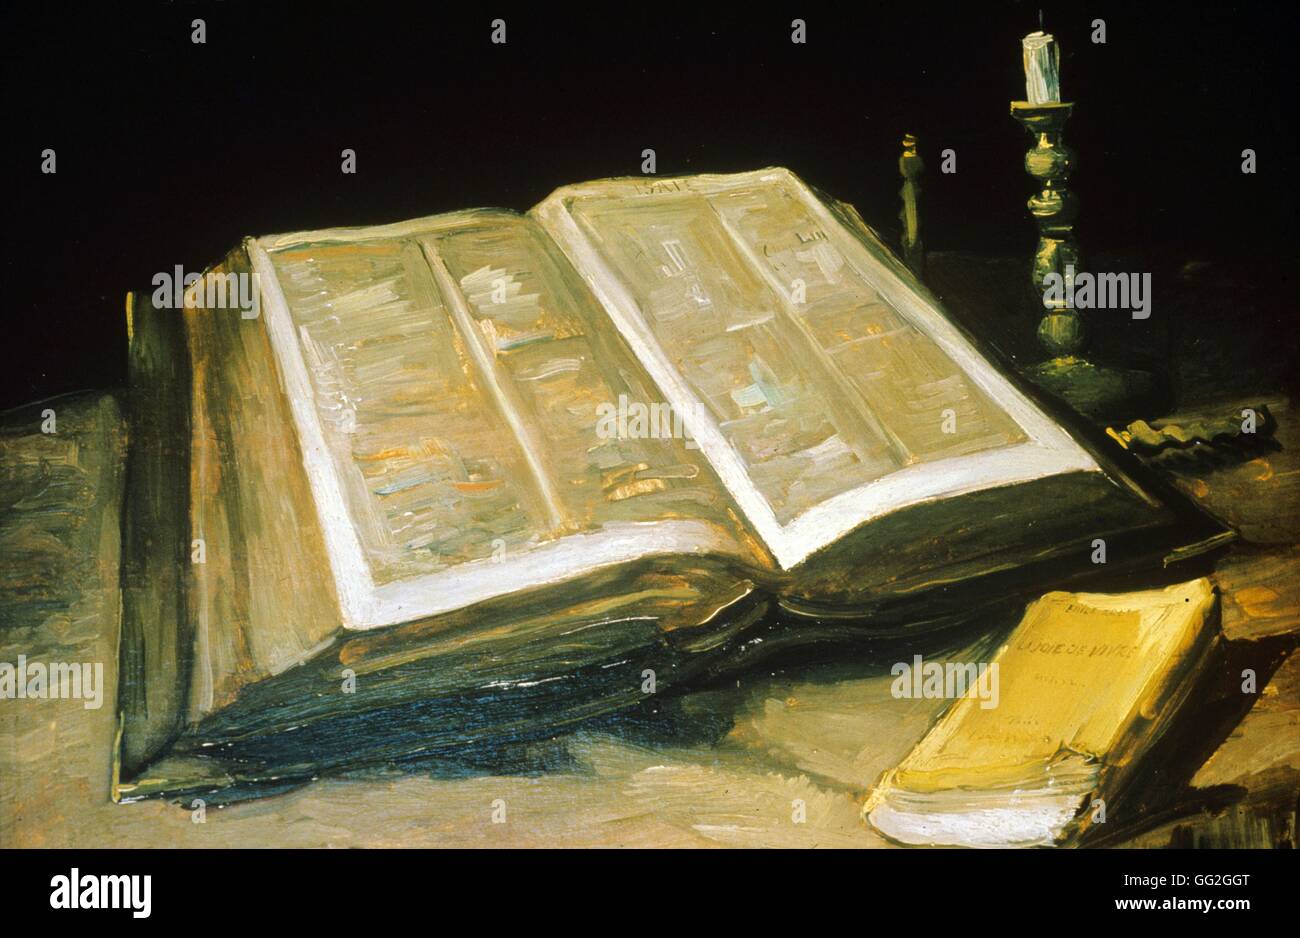 L'école Néerlandaise de Vincent van Gogh Nature morte avec Bible Octobre 1885 Huile sur toile (65,7 x 78,5 cm) Amsterdam, Van Gogh Museum Banque D'Images